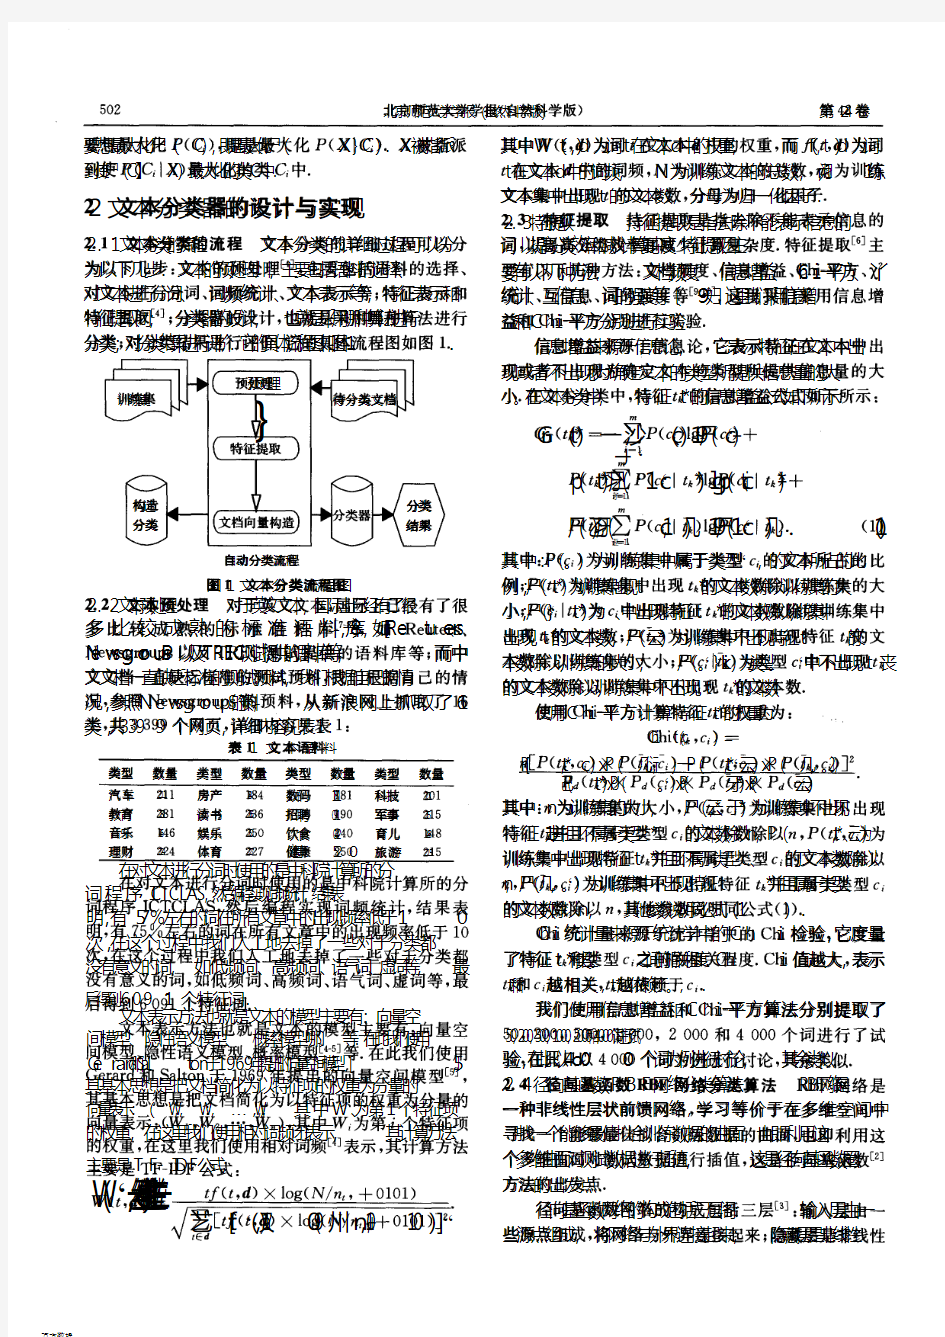 一种新的中文文本分类算法